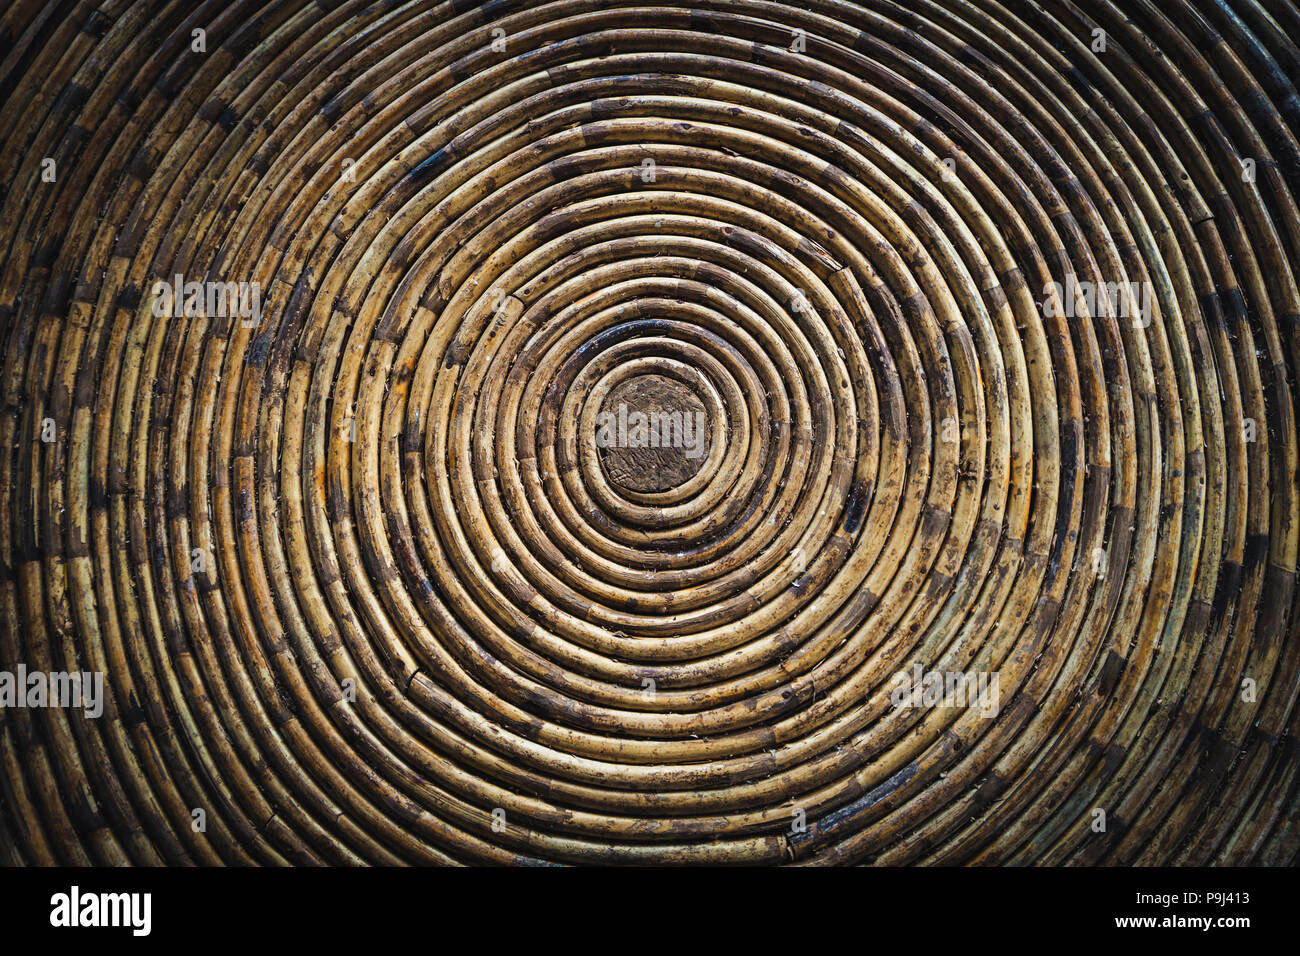 Kreisförmige Textur einer Bambus Schüssel. Unter einem bambusdach. in eine Spirale aus Bambus verdreht Stockfoto